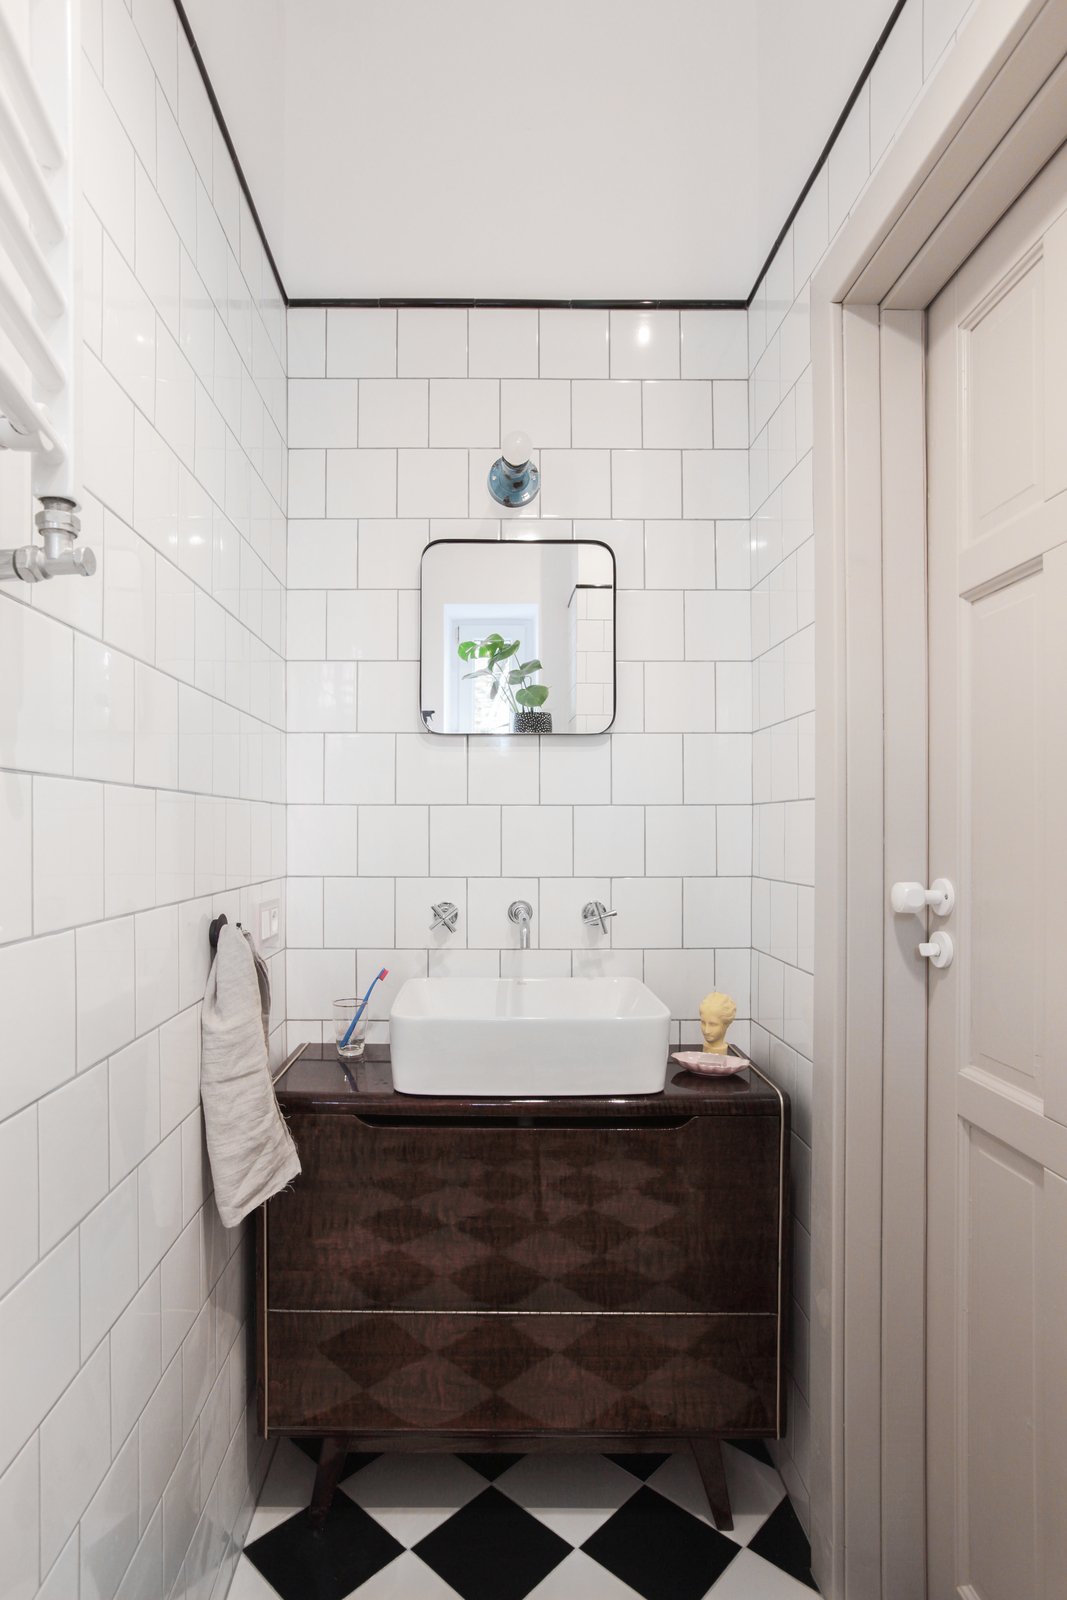 Phòng tắm sử dụng gạch trắng ốp tường và gương soi hình vuông tạo cảm giác rộng rãi hơn so với diện tích thật. Sàn ốp gạch trắng - đen cổ điển, cả chiếc tủ vanity cũng theo phong cách hoài cổ, bề mặt sáng bóng phản chiếu hình ảnh phòng tắm nhỏ xinh.